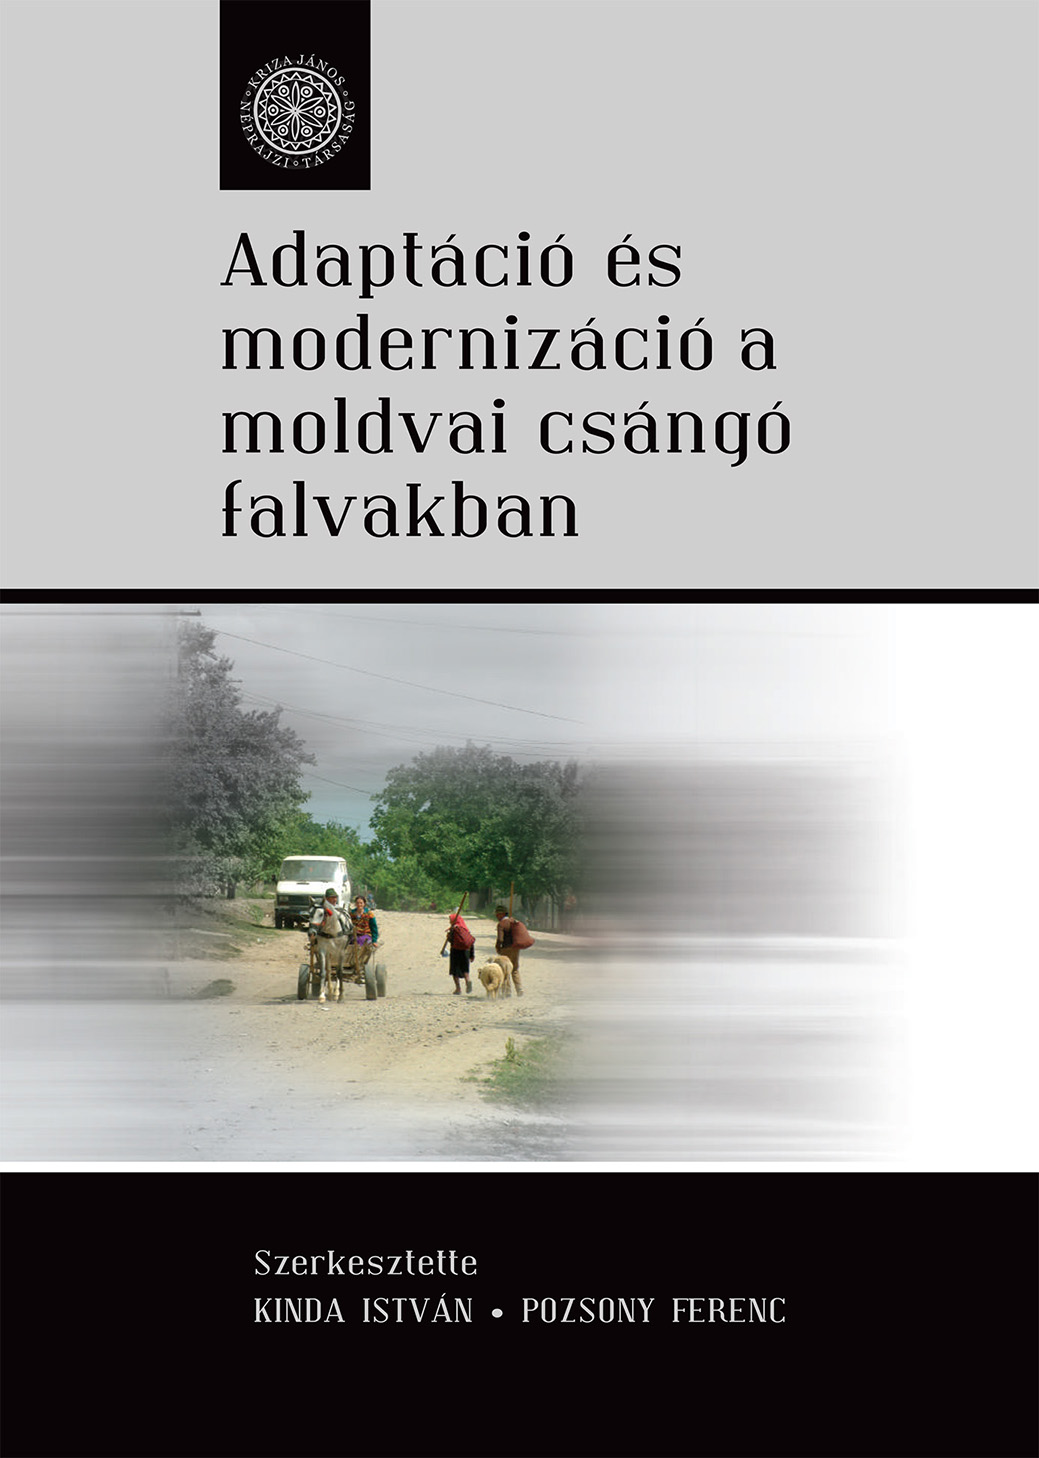 [Adaptation and Modernization in Villages of the Moldavian Csángós] Adaptáció és modernizáció a moldvai csángó falvakban